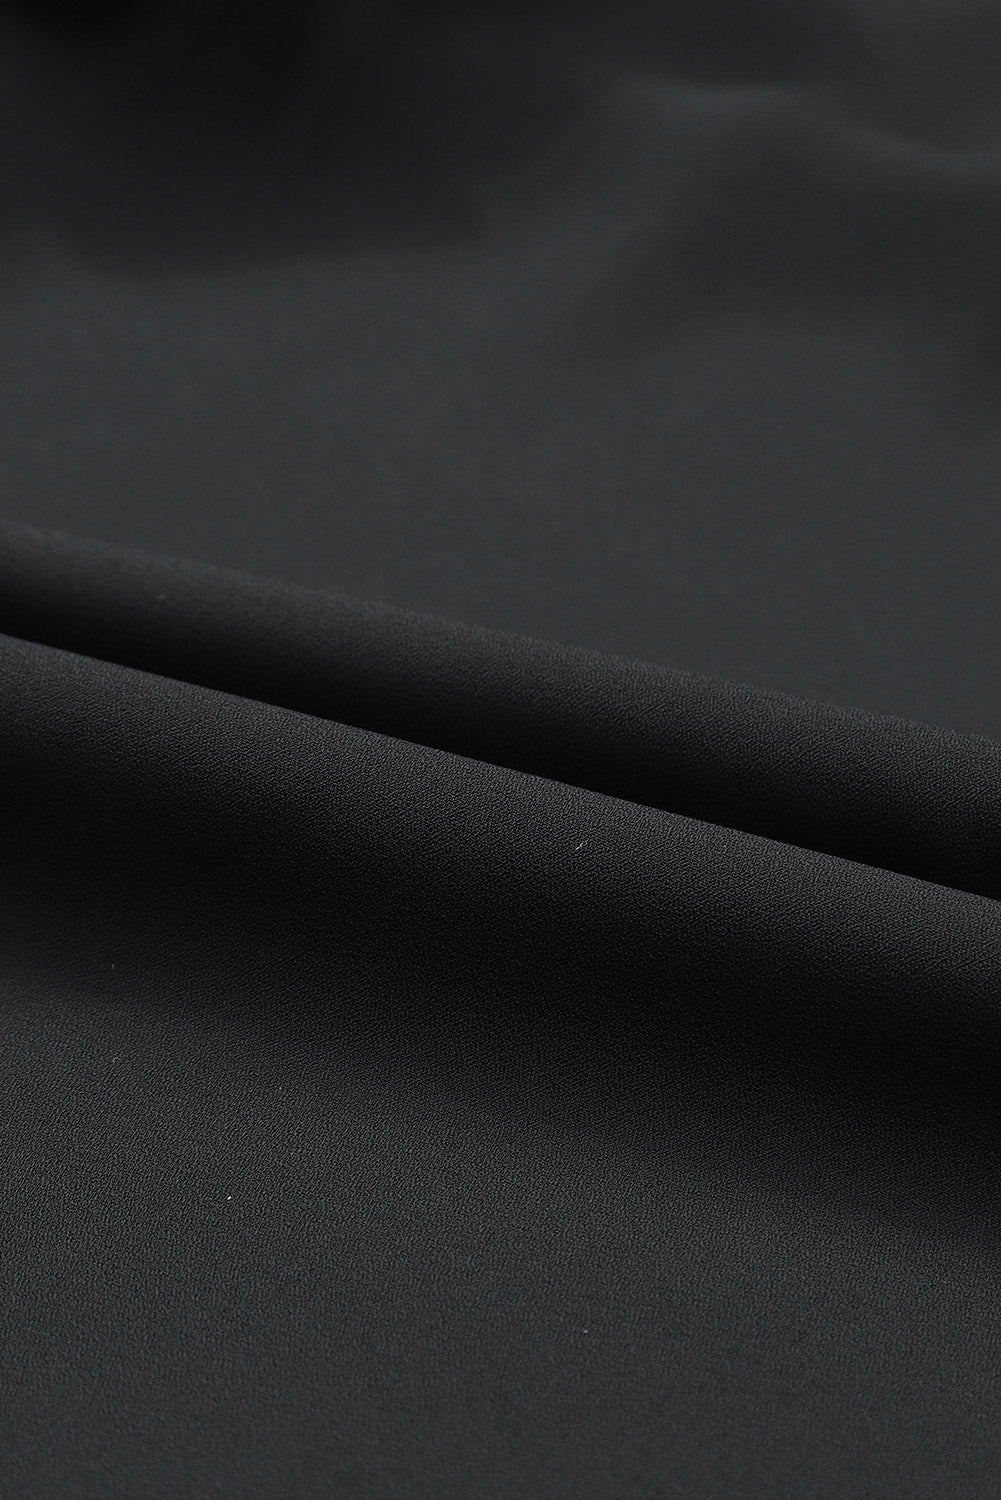 Schwarze Bluse mit Knopf, Schlüssellochausschnitt hinten und plissiertem Rüschenbesatz